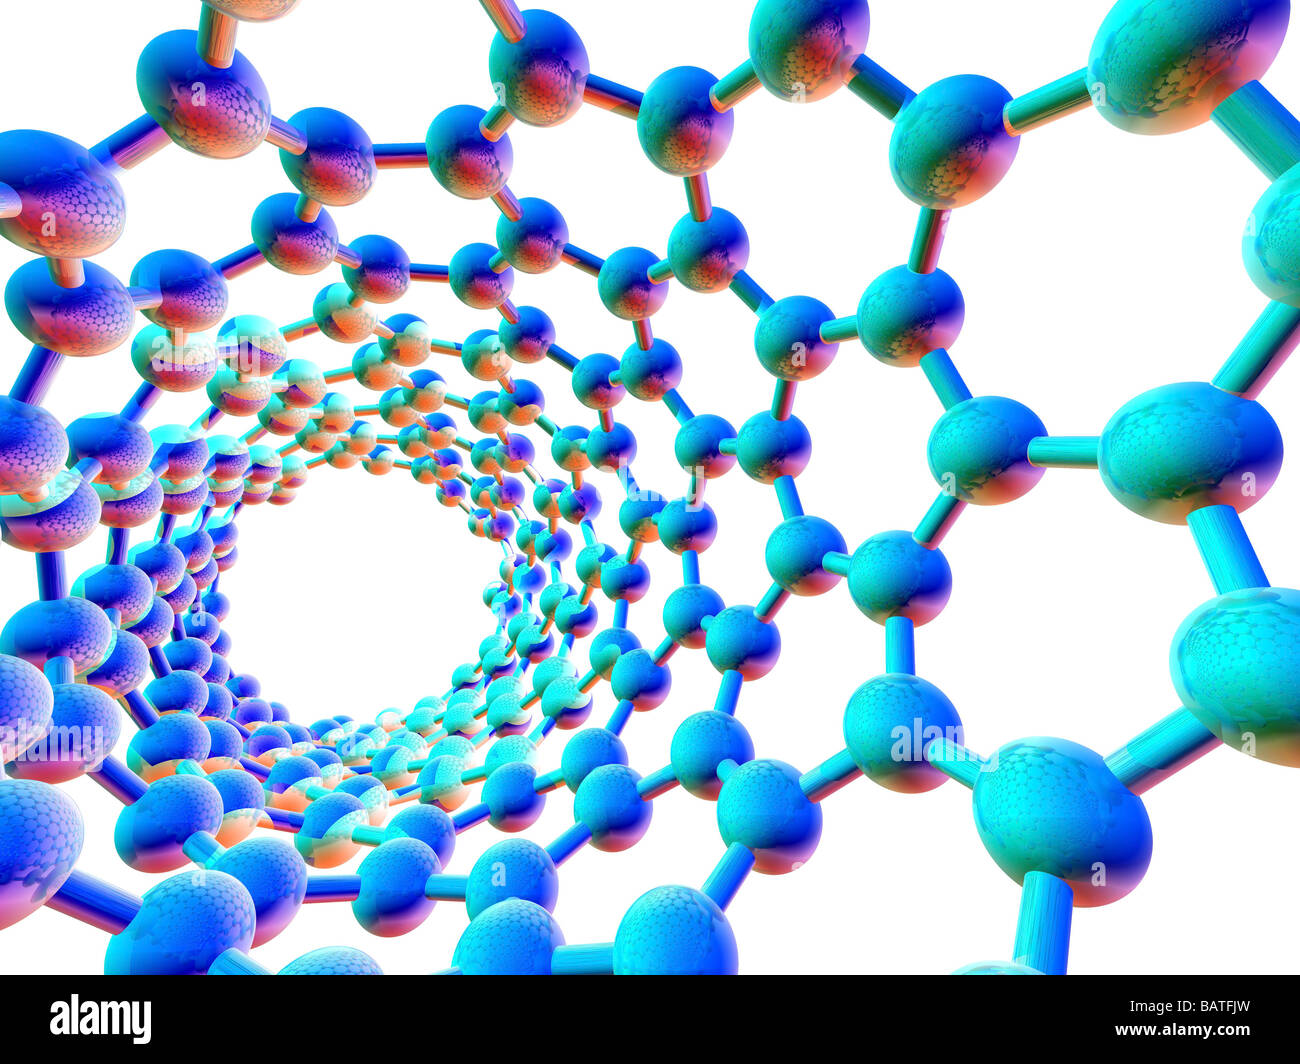 De nanotubes de carbone. L'oeuvre de l'ordinateur montrant la structure du carbone hexagonale d'un nano tube, orbuckytube. Banque D'Images